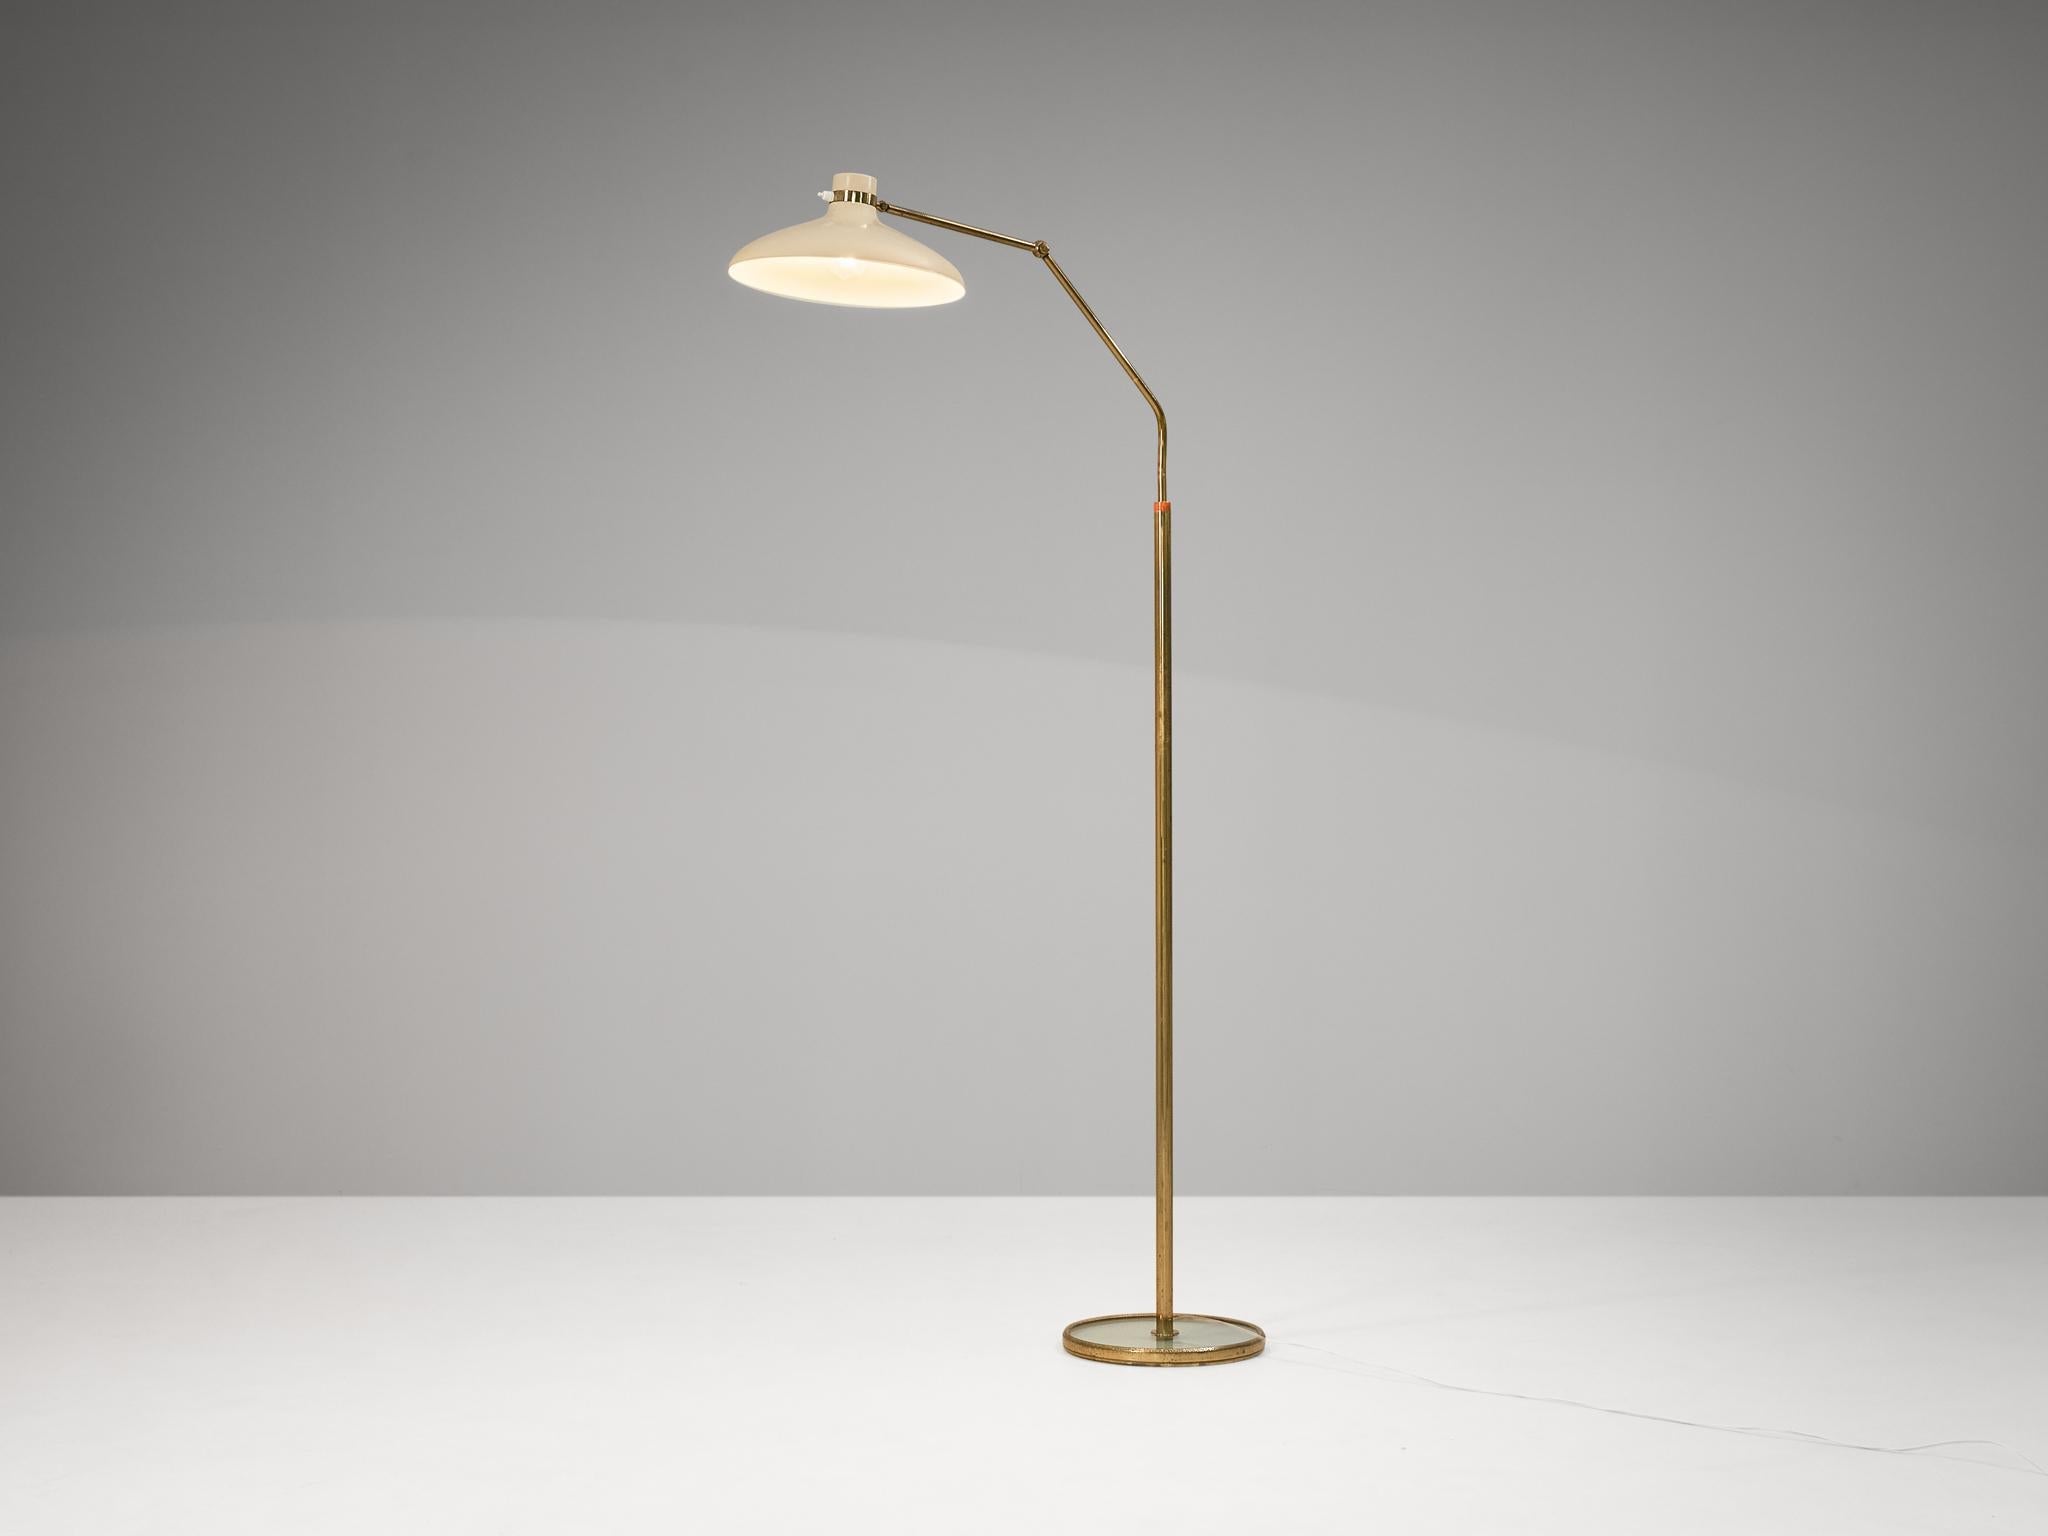 Gio Ponti for Fontana Arte ‘Parco Dei Principi’ Floor Lamp with White Shade